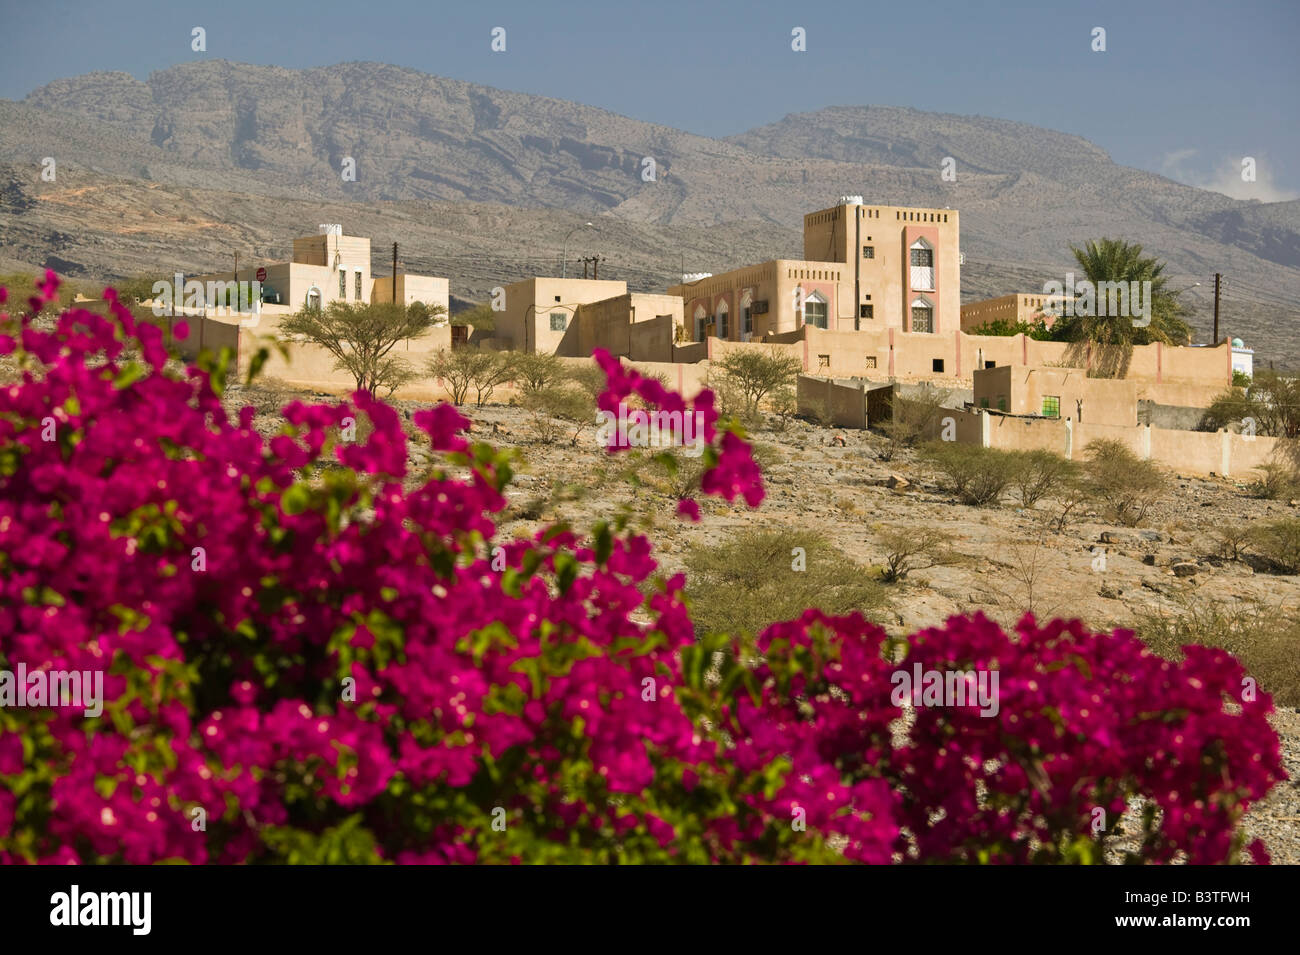 Omán, montañas Hajar occidentales, Al Hamra. Edificios de la ciudad Foto de stock